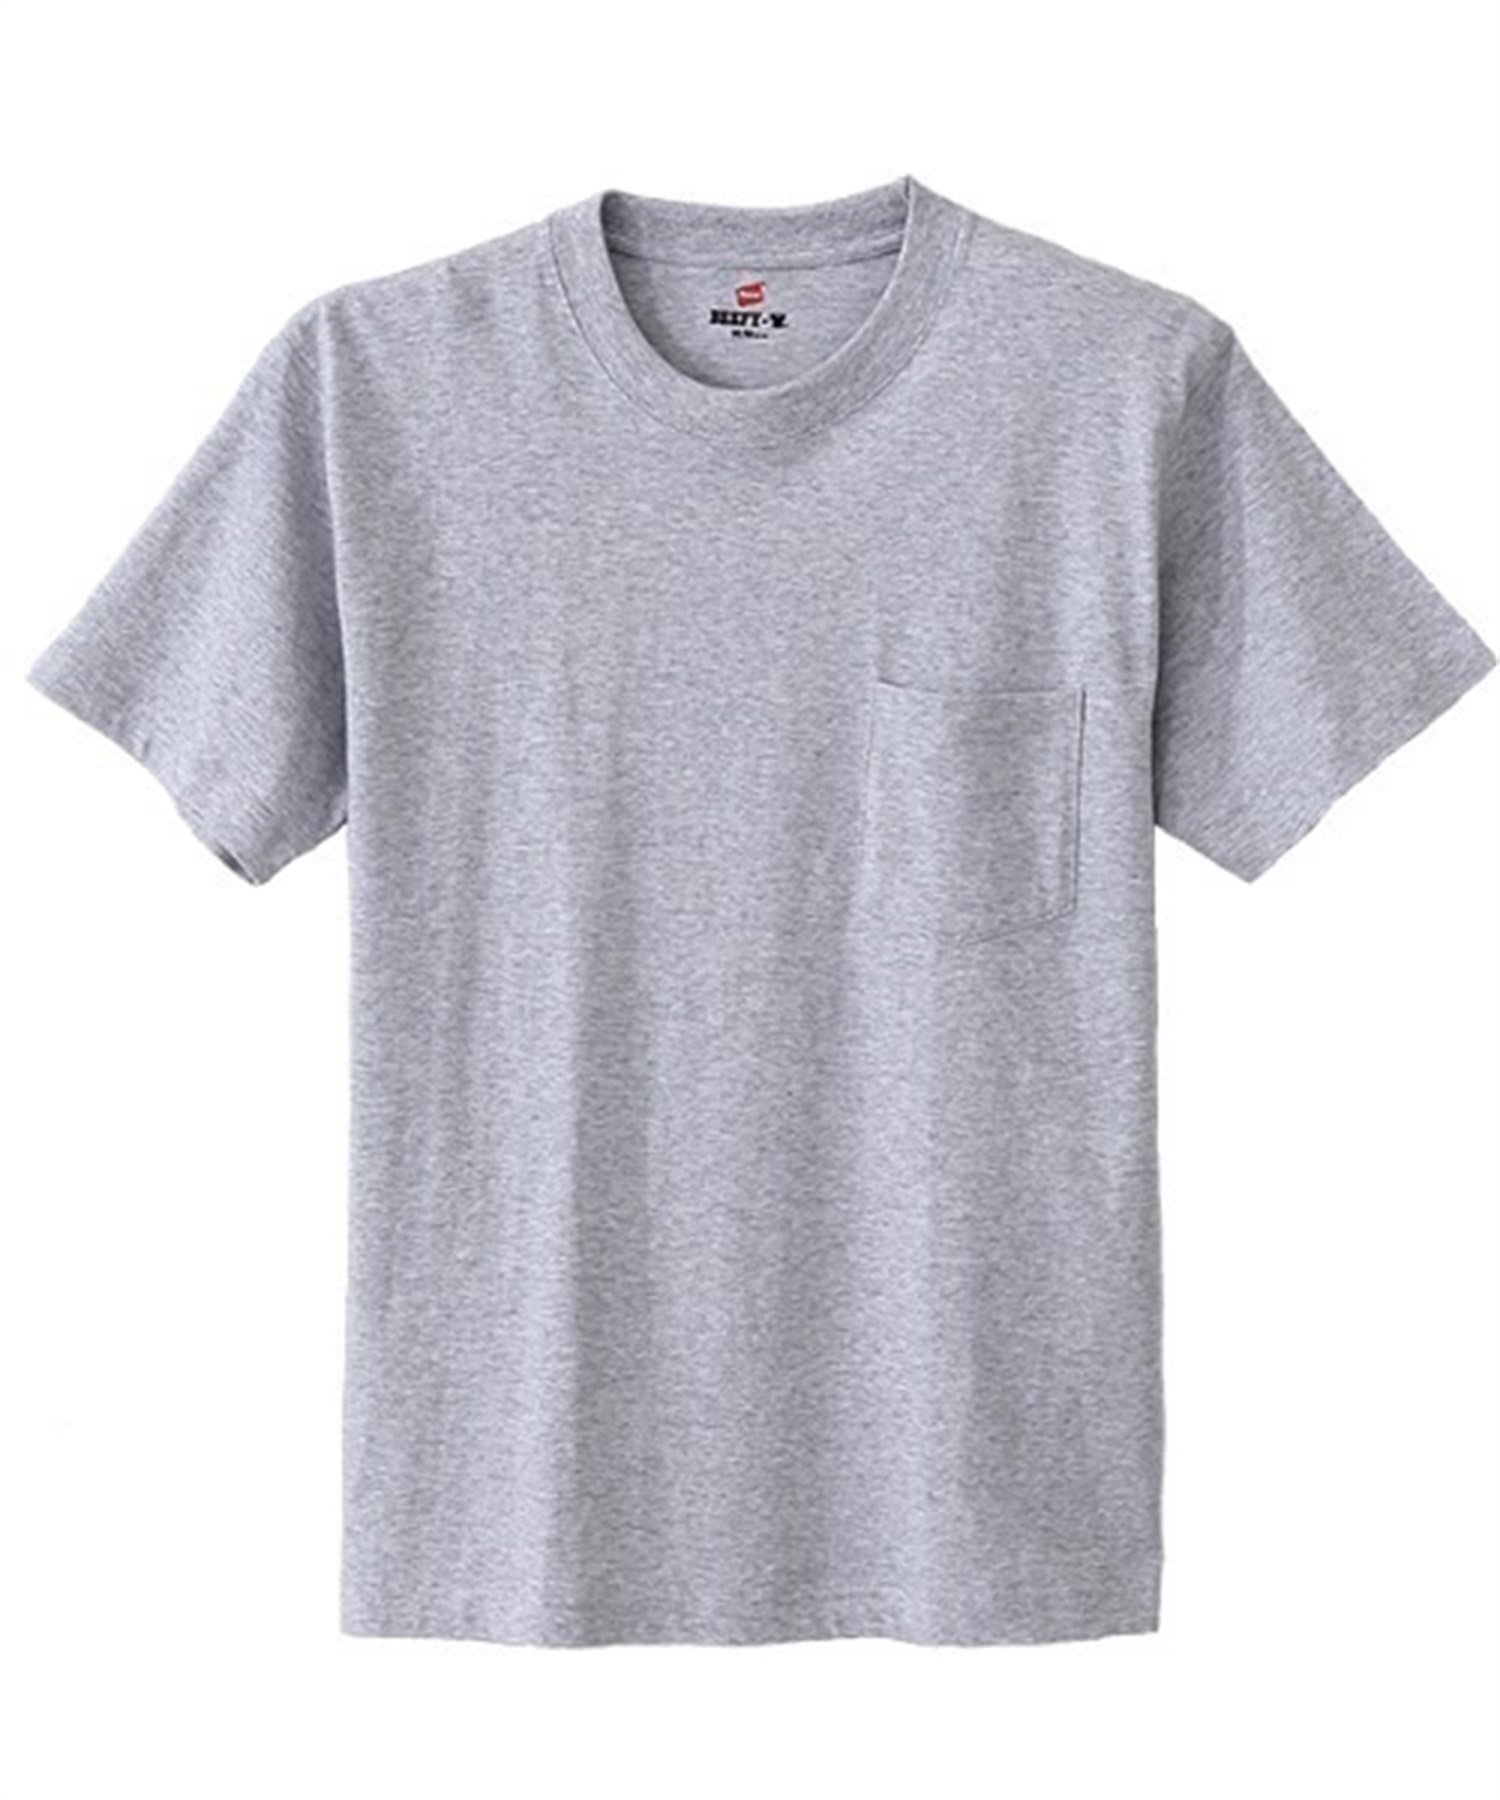 メンズ 半袖 Tシャツ HANES ヘインズBEEFY CREW NECK T-SHIRT ビーフィー クルーネック Tシャツ H5190(060-S)